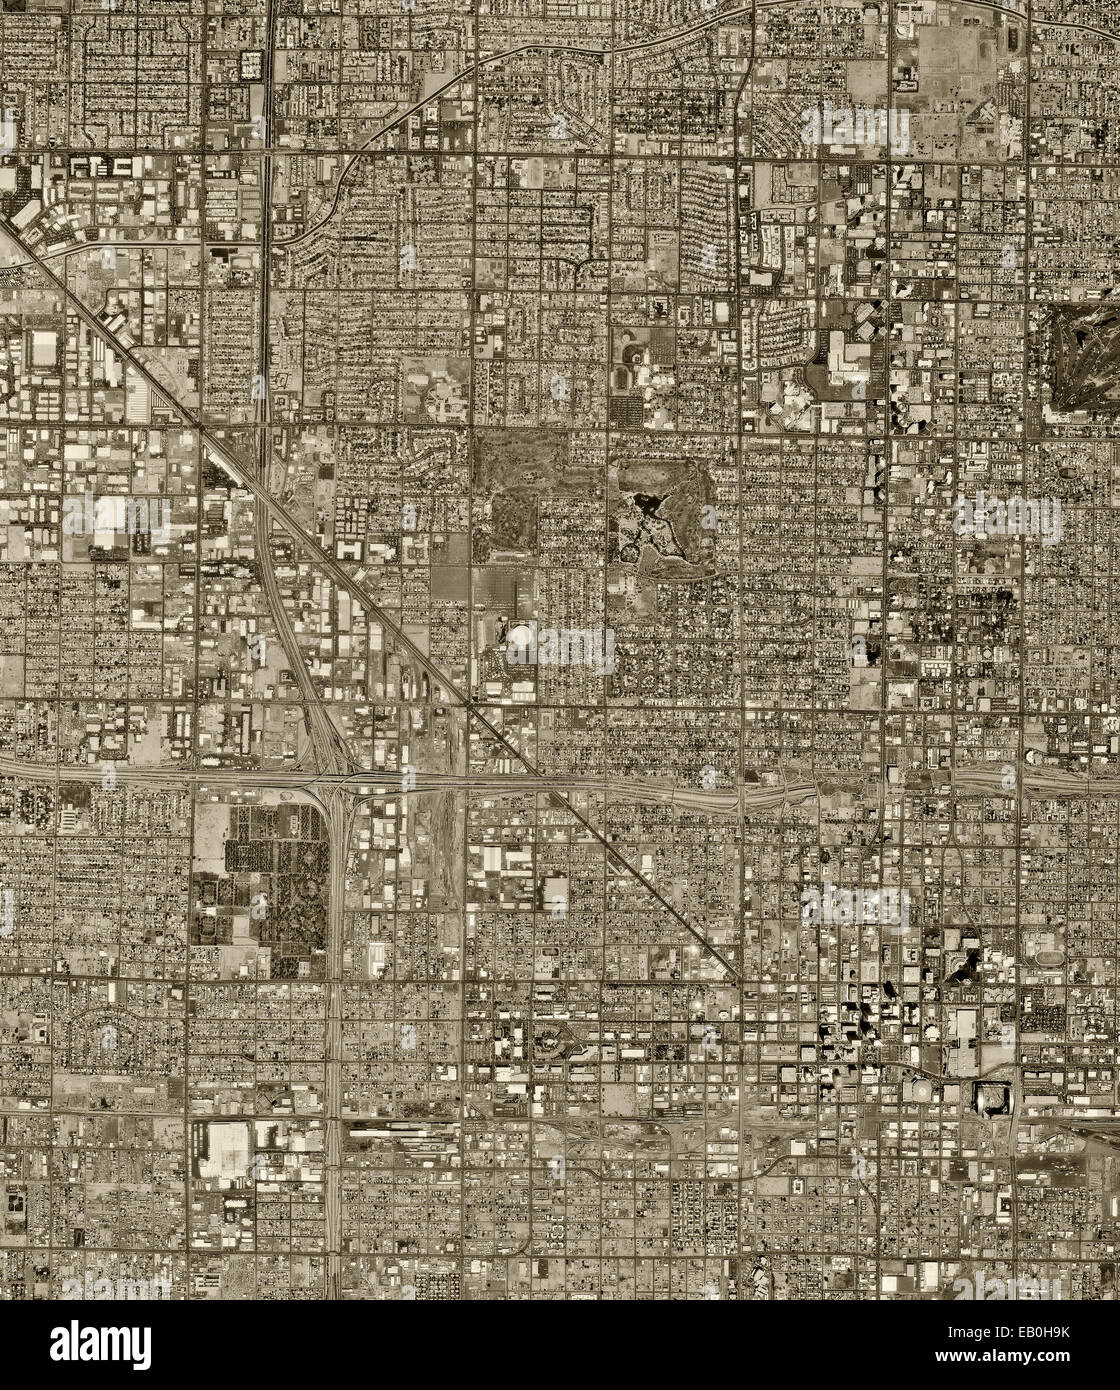 Photographie aérienne historique de Phoenix, Arizona, 1997 Banque D'Images